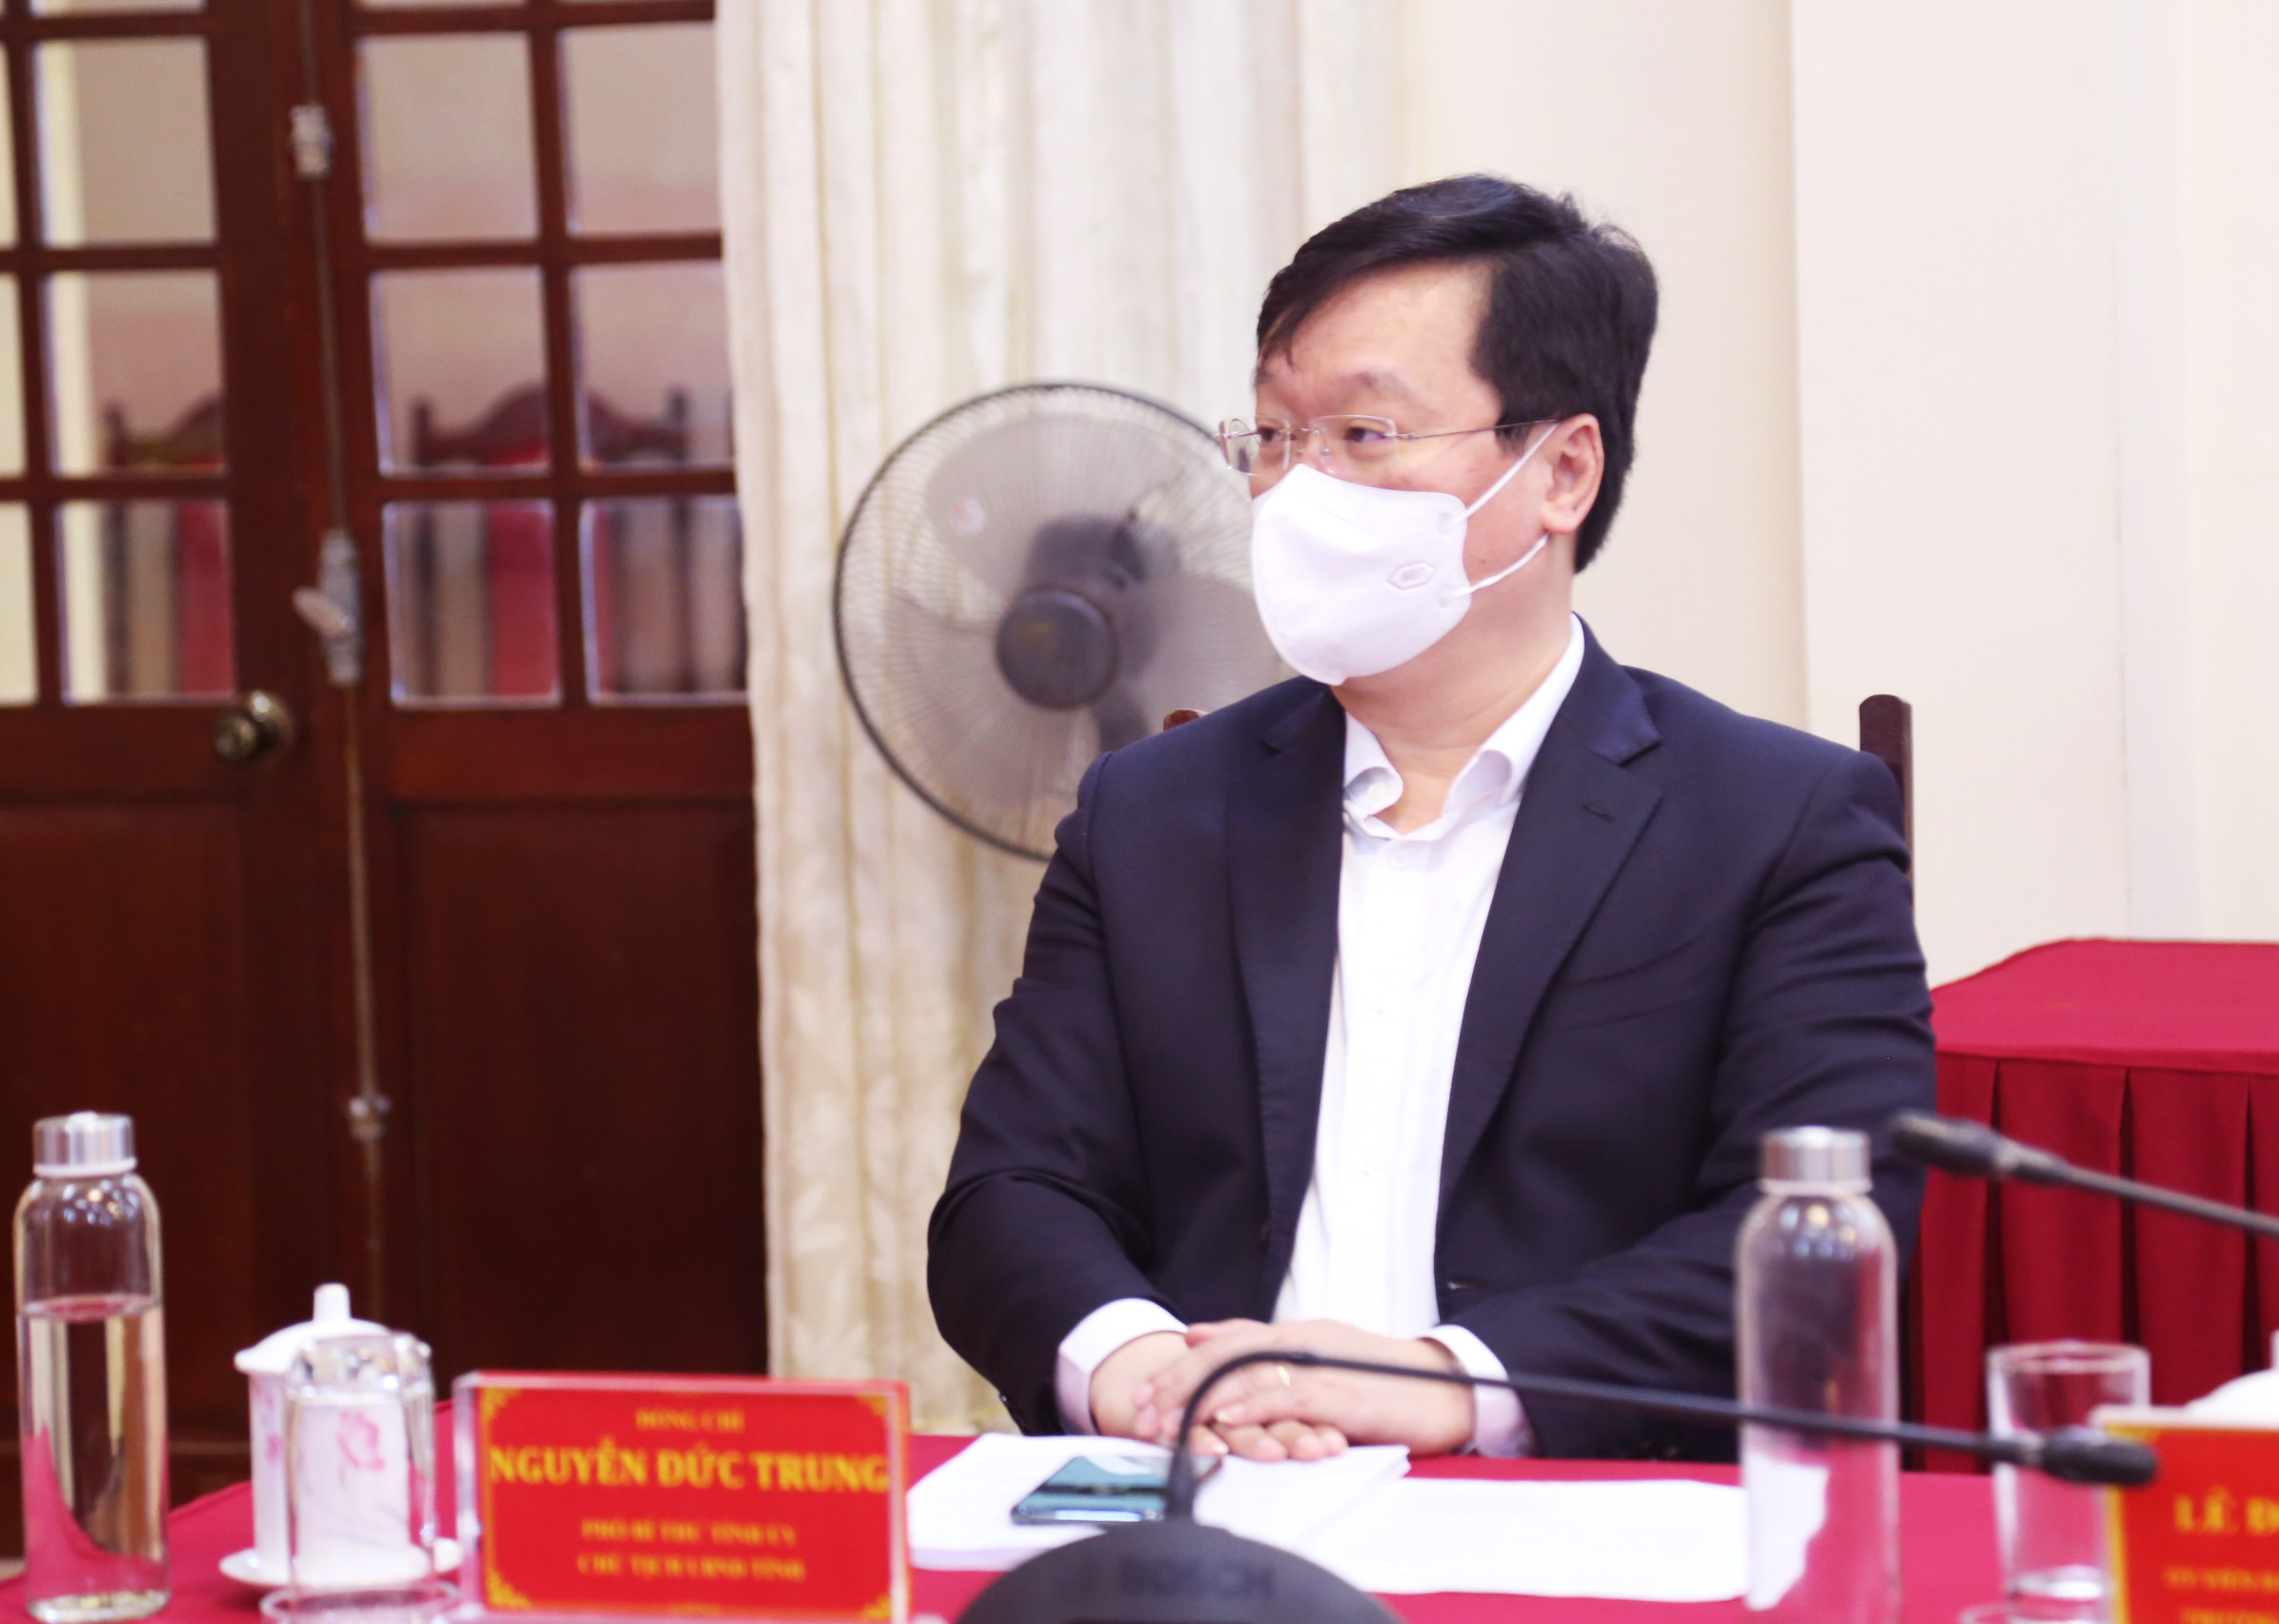 Đồng chí Nguyễn Đức Trung - Phó Bí thư Tỉnh ủy, Chủ tịch UBND tỉnh Nghệ An dự cuộc làm việc 